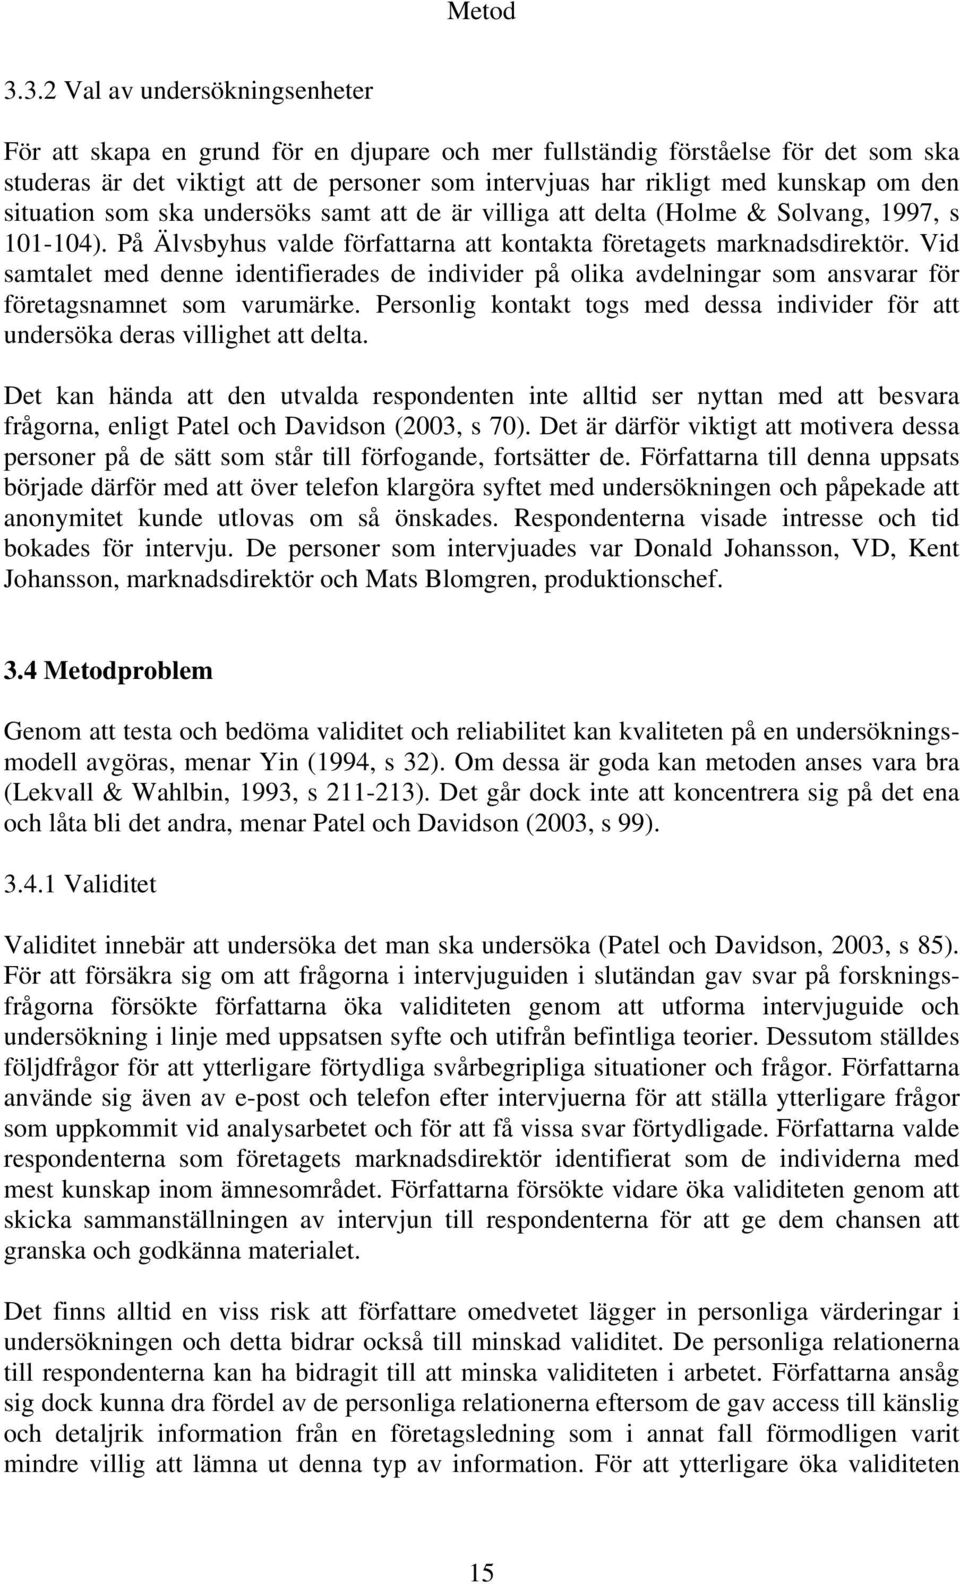 den situation som ska undersöks samt att de är villiga att delta (Holme & Solvang, 1997, s 101-104). På Älvsbyhus valde författarna att kontakta företagets marknadsdirektör.